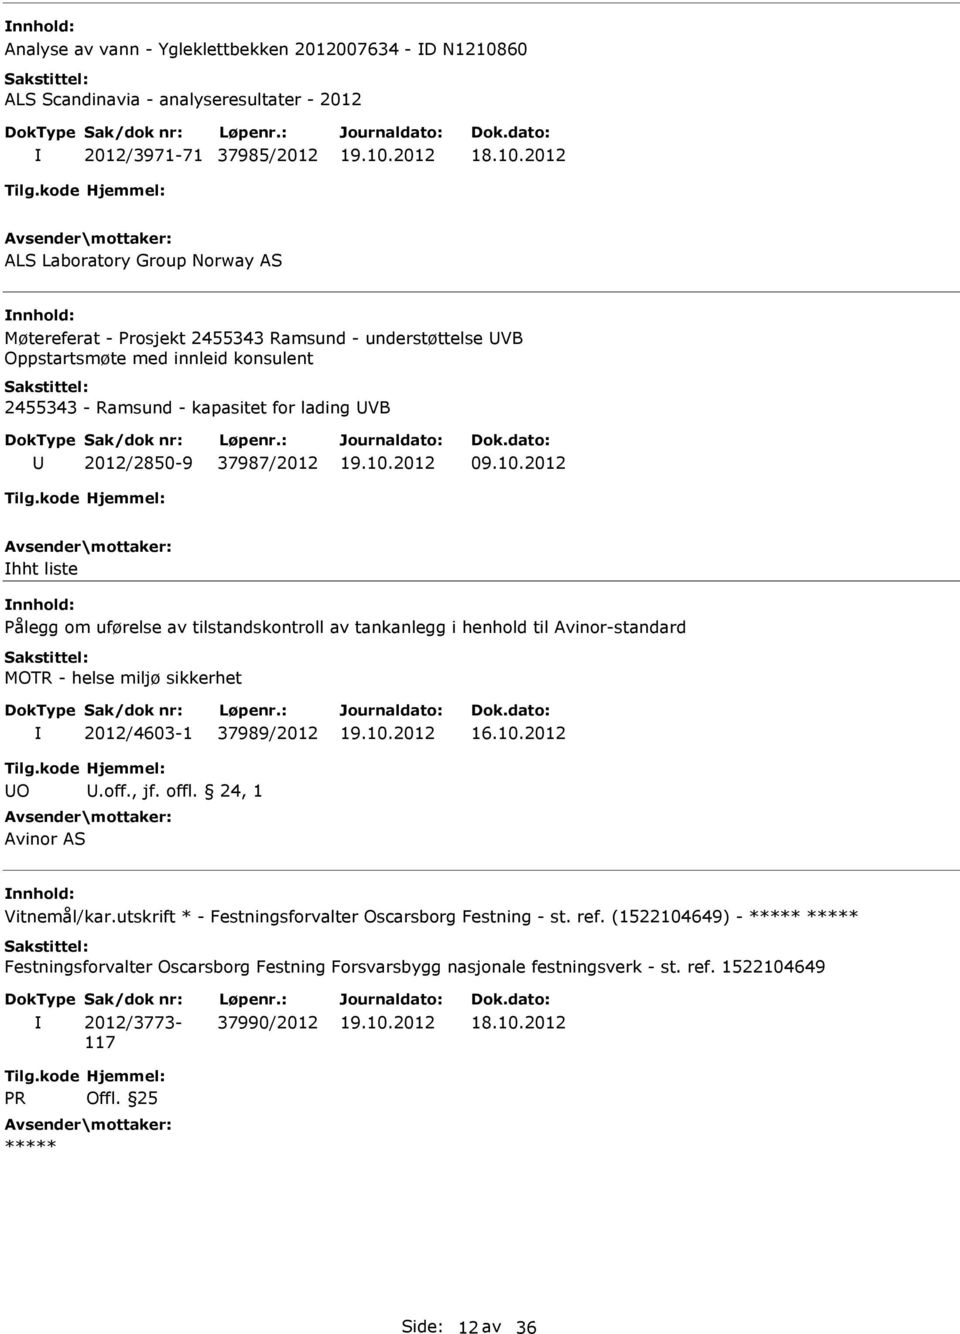 2012 hht liste Pålegg om uførelse av tilstandskontroll av tankanlegg i henhold til Avinor-standard MOTR - helse miljø sikkerhet 2012/4603-1 37989/2012 16.10.2012 O.off., jf. offl.